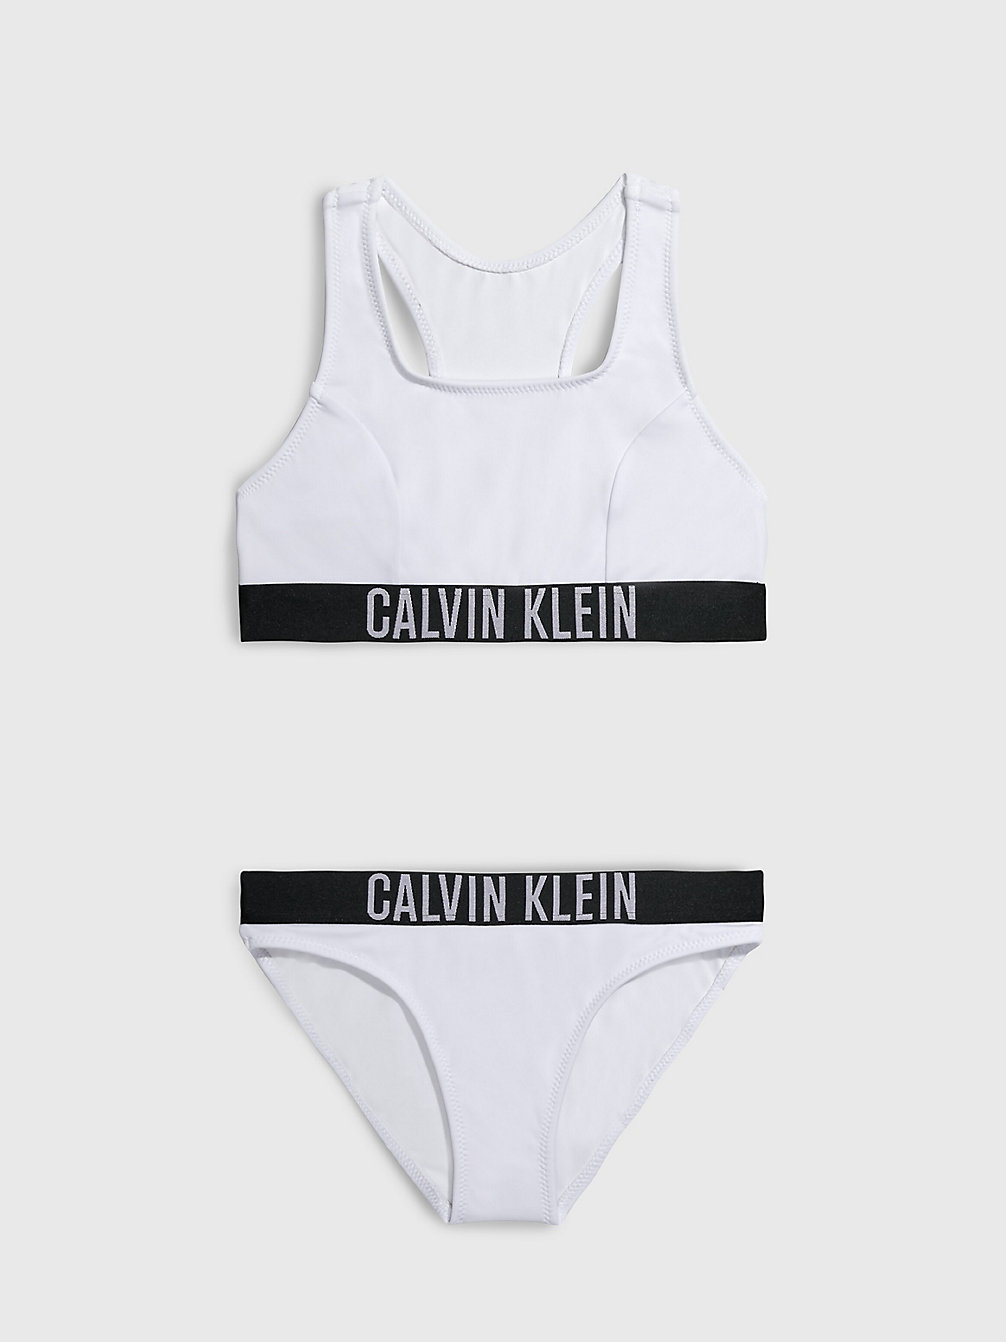 PVH CLASSIC WHITE > Meisjesbralette Bikini - Intense Power > undefined meisjes - Calvin Klein